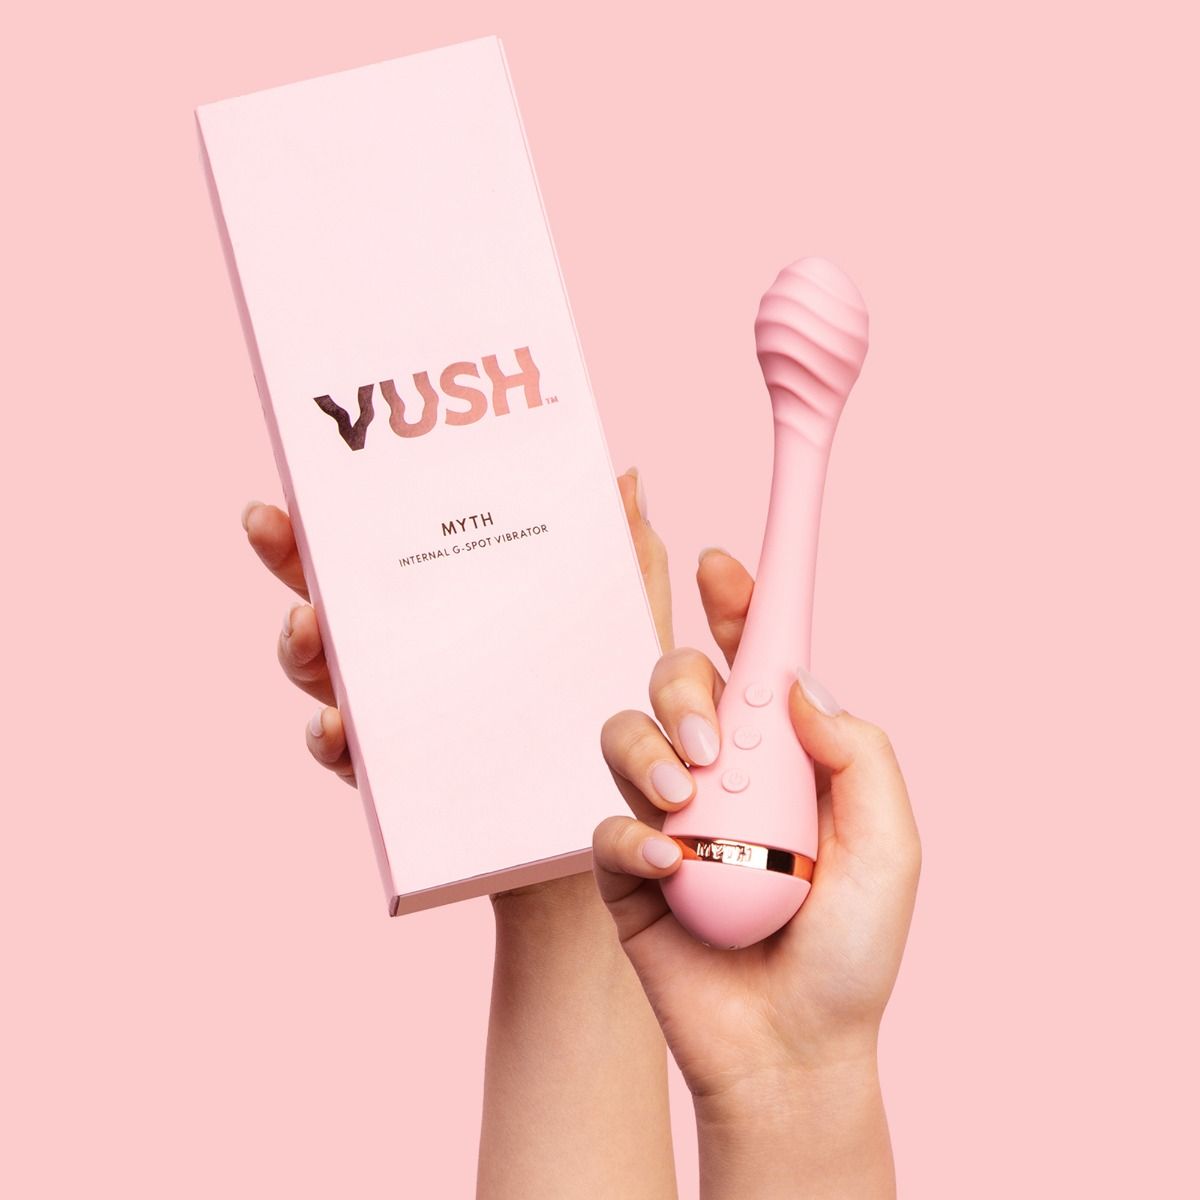 Sex toy for sale UK Vush - G spot vibrator for women